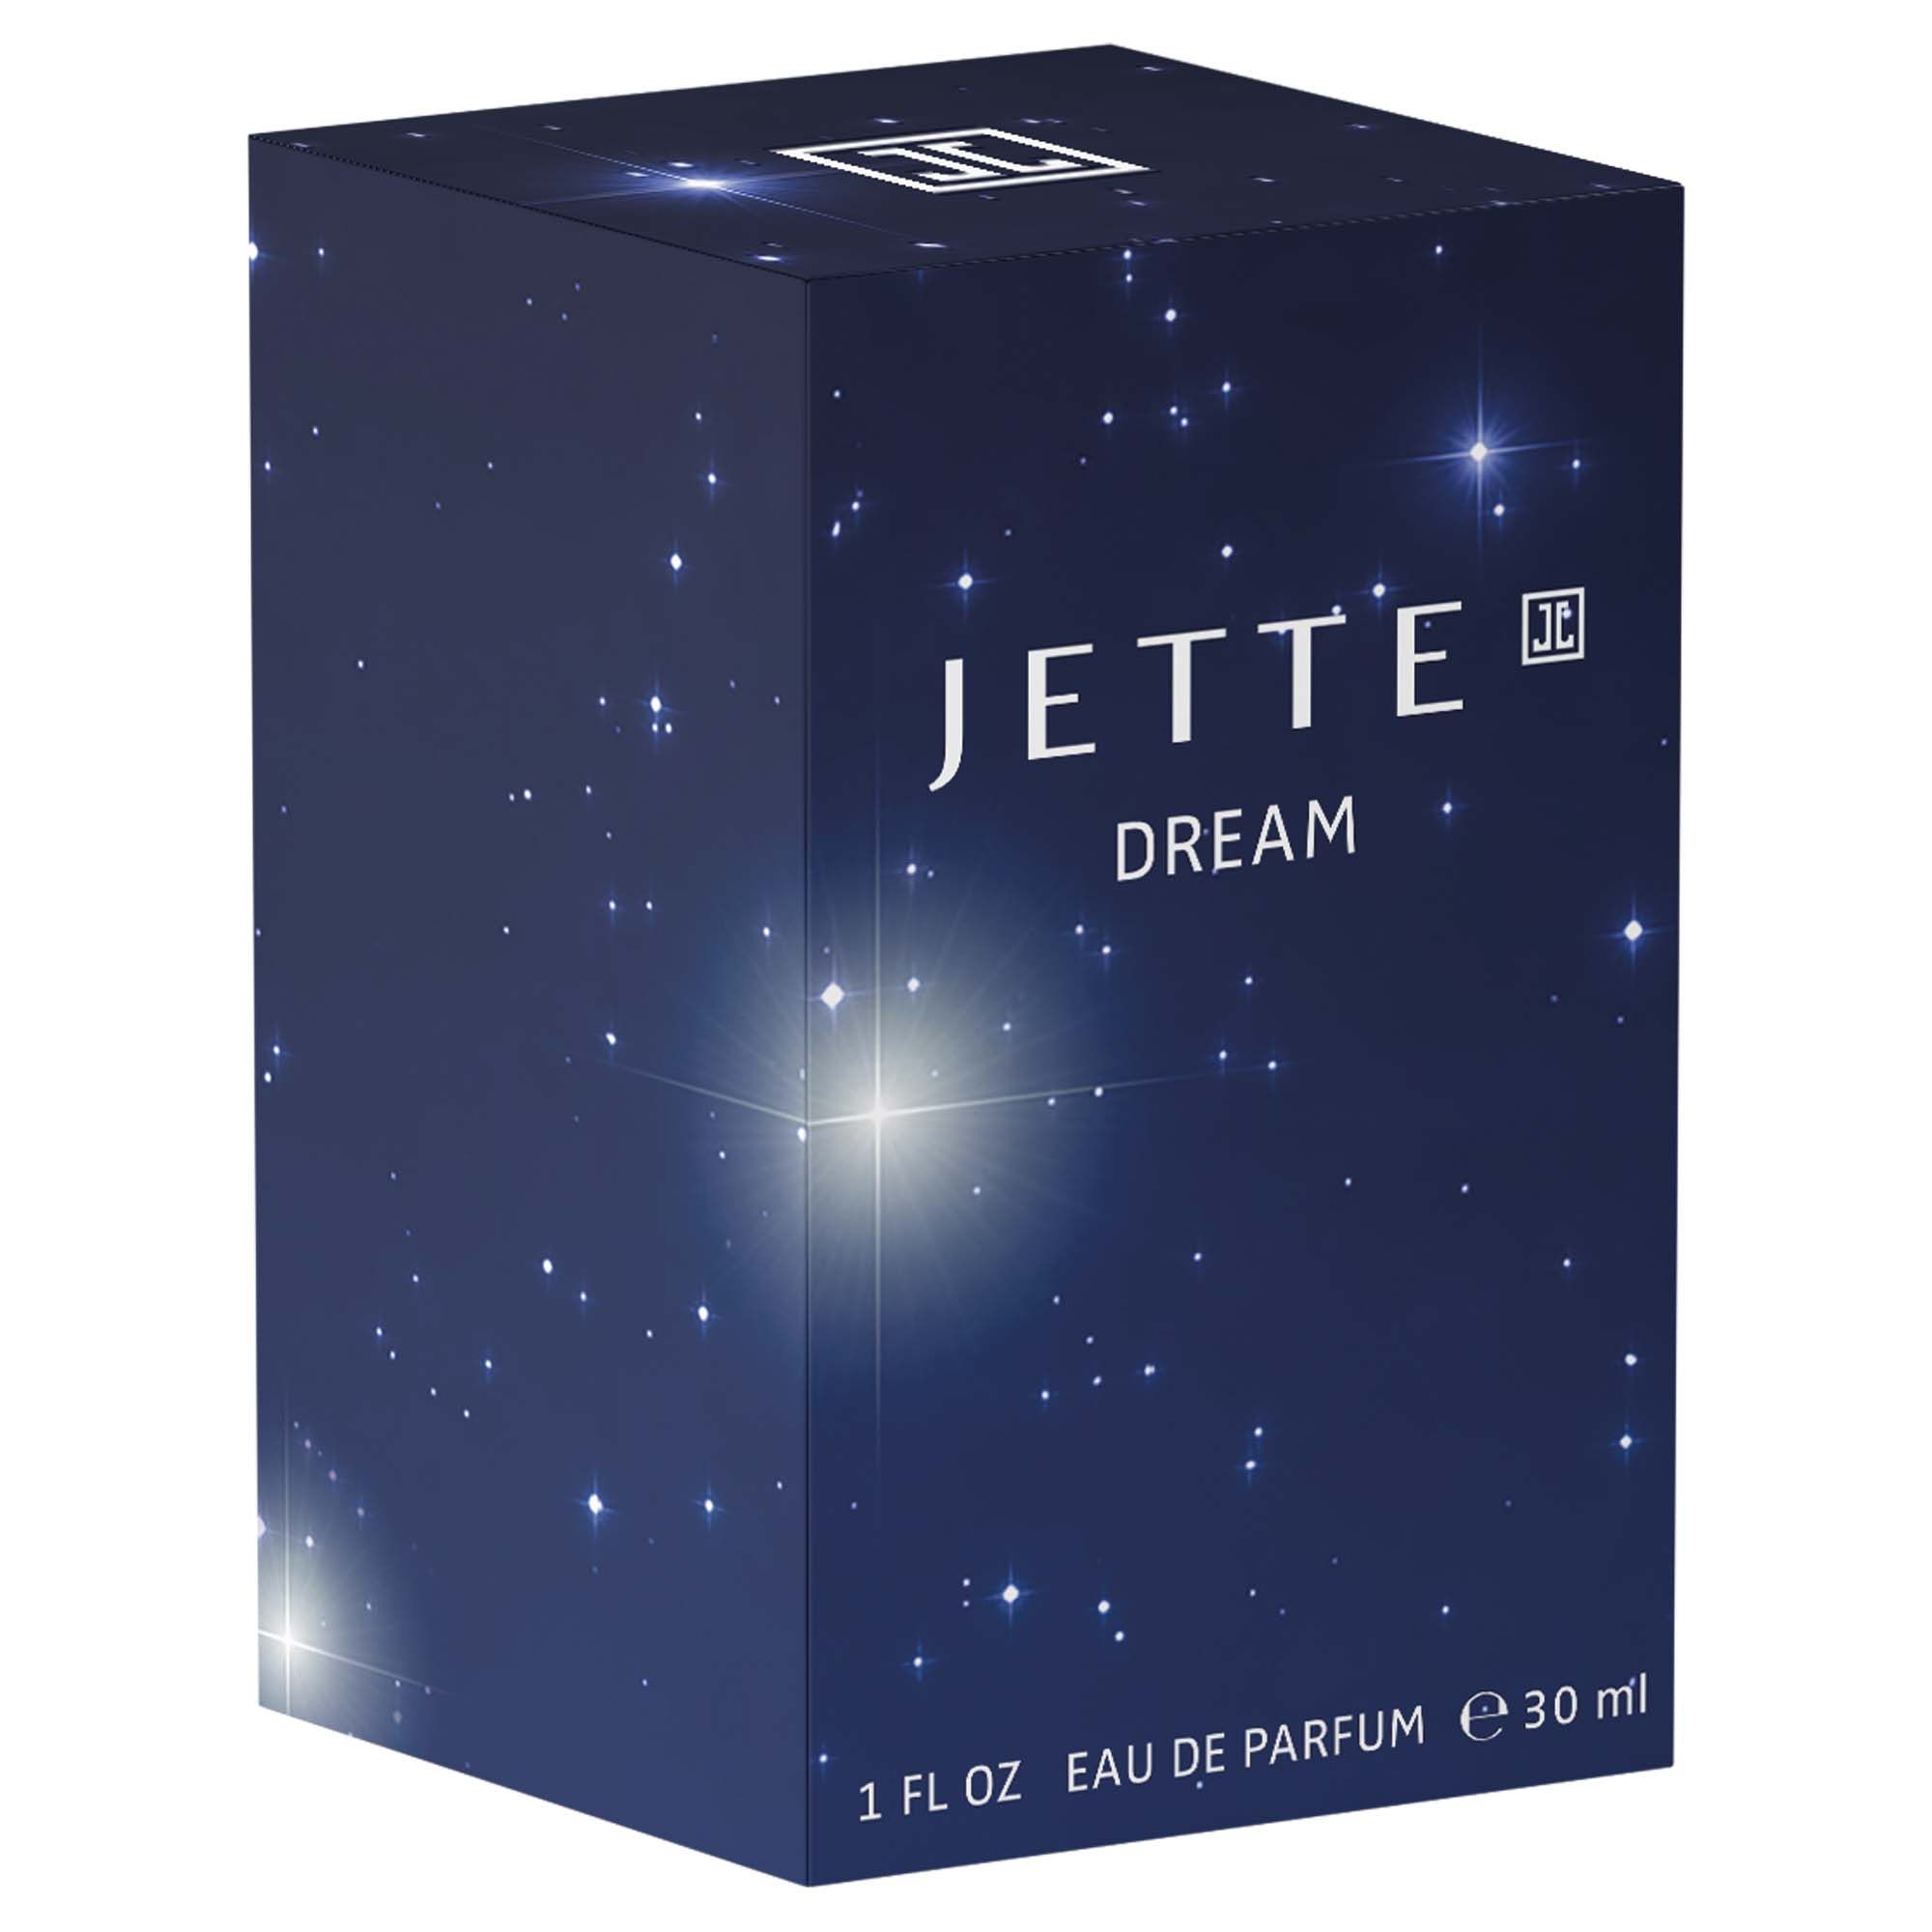 JETTE Dream Eau de Parfum